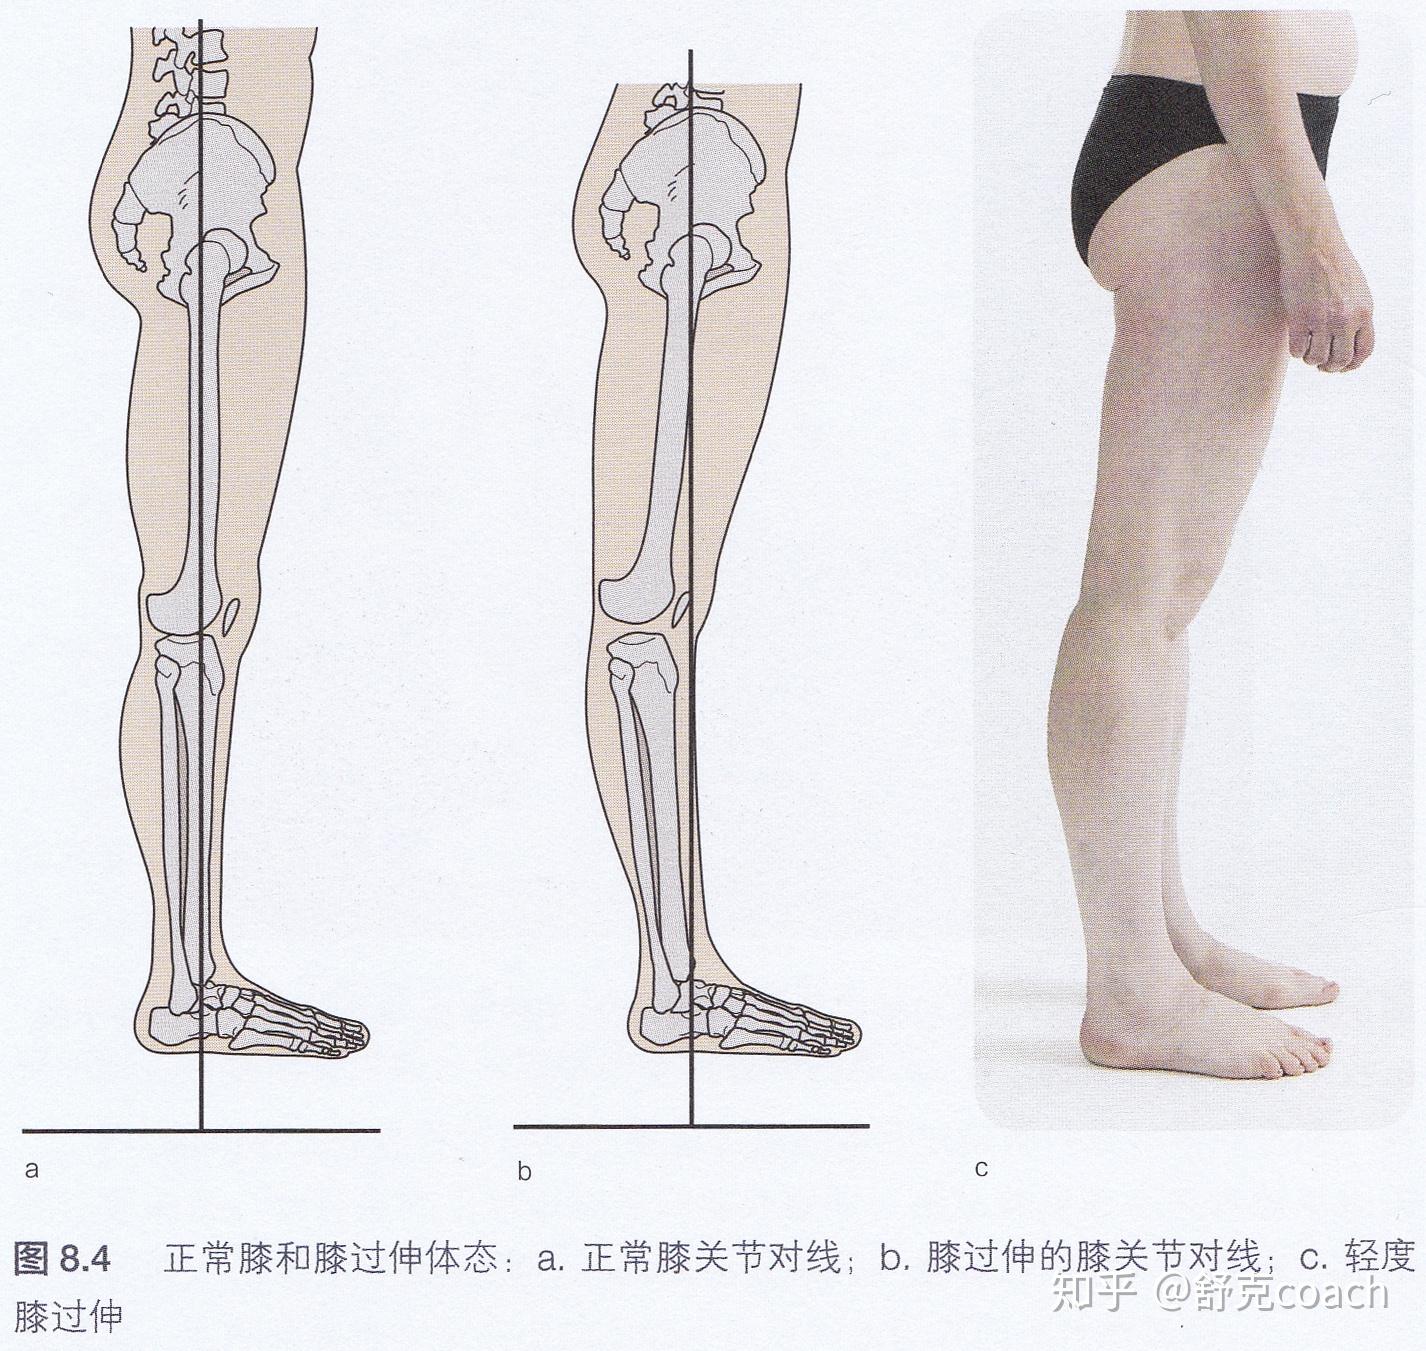 运医专家谈 | 孩子的膝盖怎么突然伸不直了？|运医|膝盖|专家|膝关节|盘状|胫骨|股骨|运动|-健康界